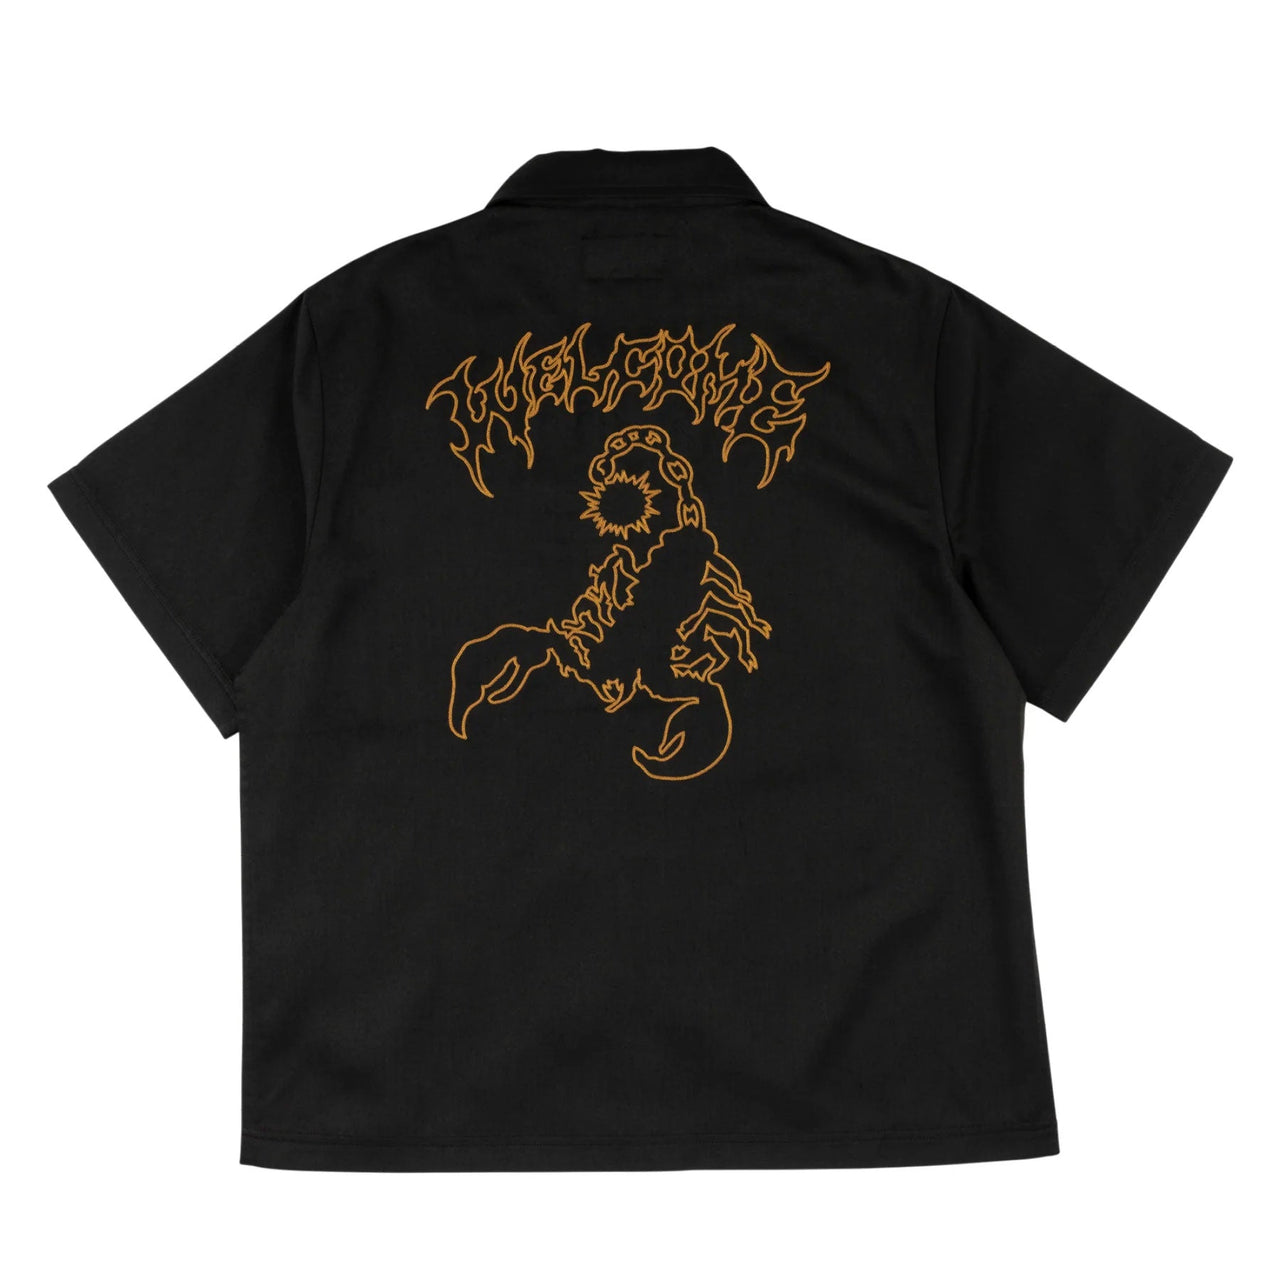 Welcome Venom Chain Stitch Work Shirt - Black image 2